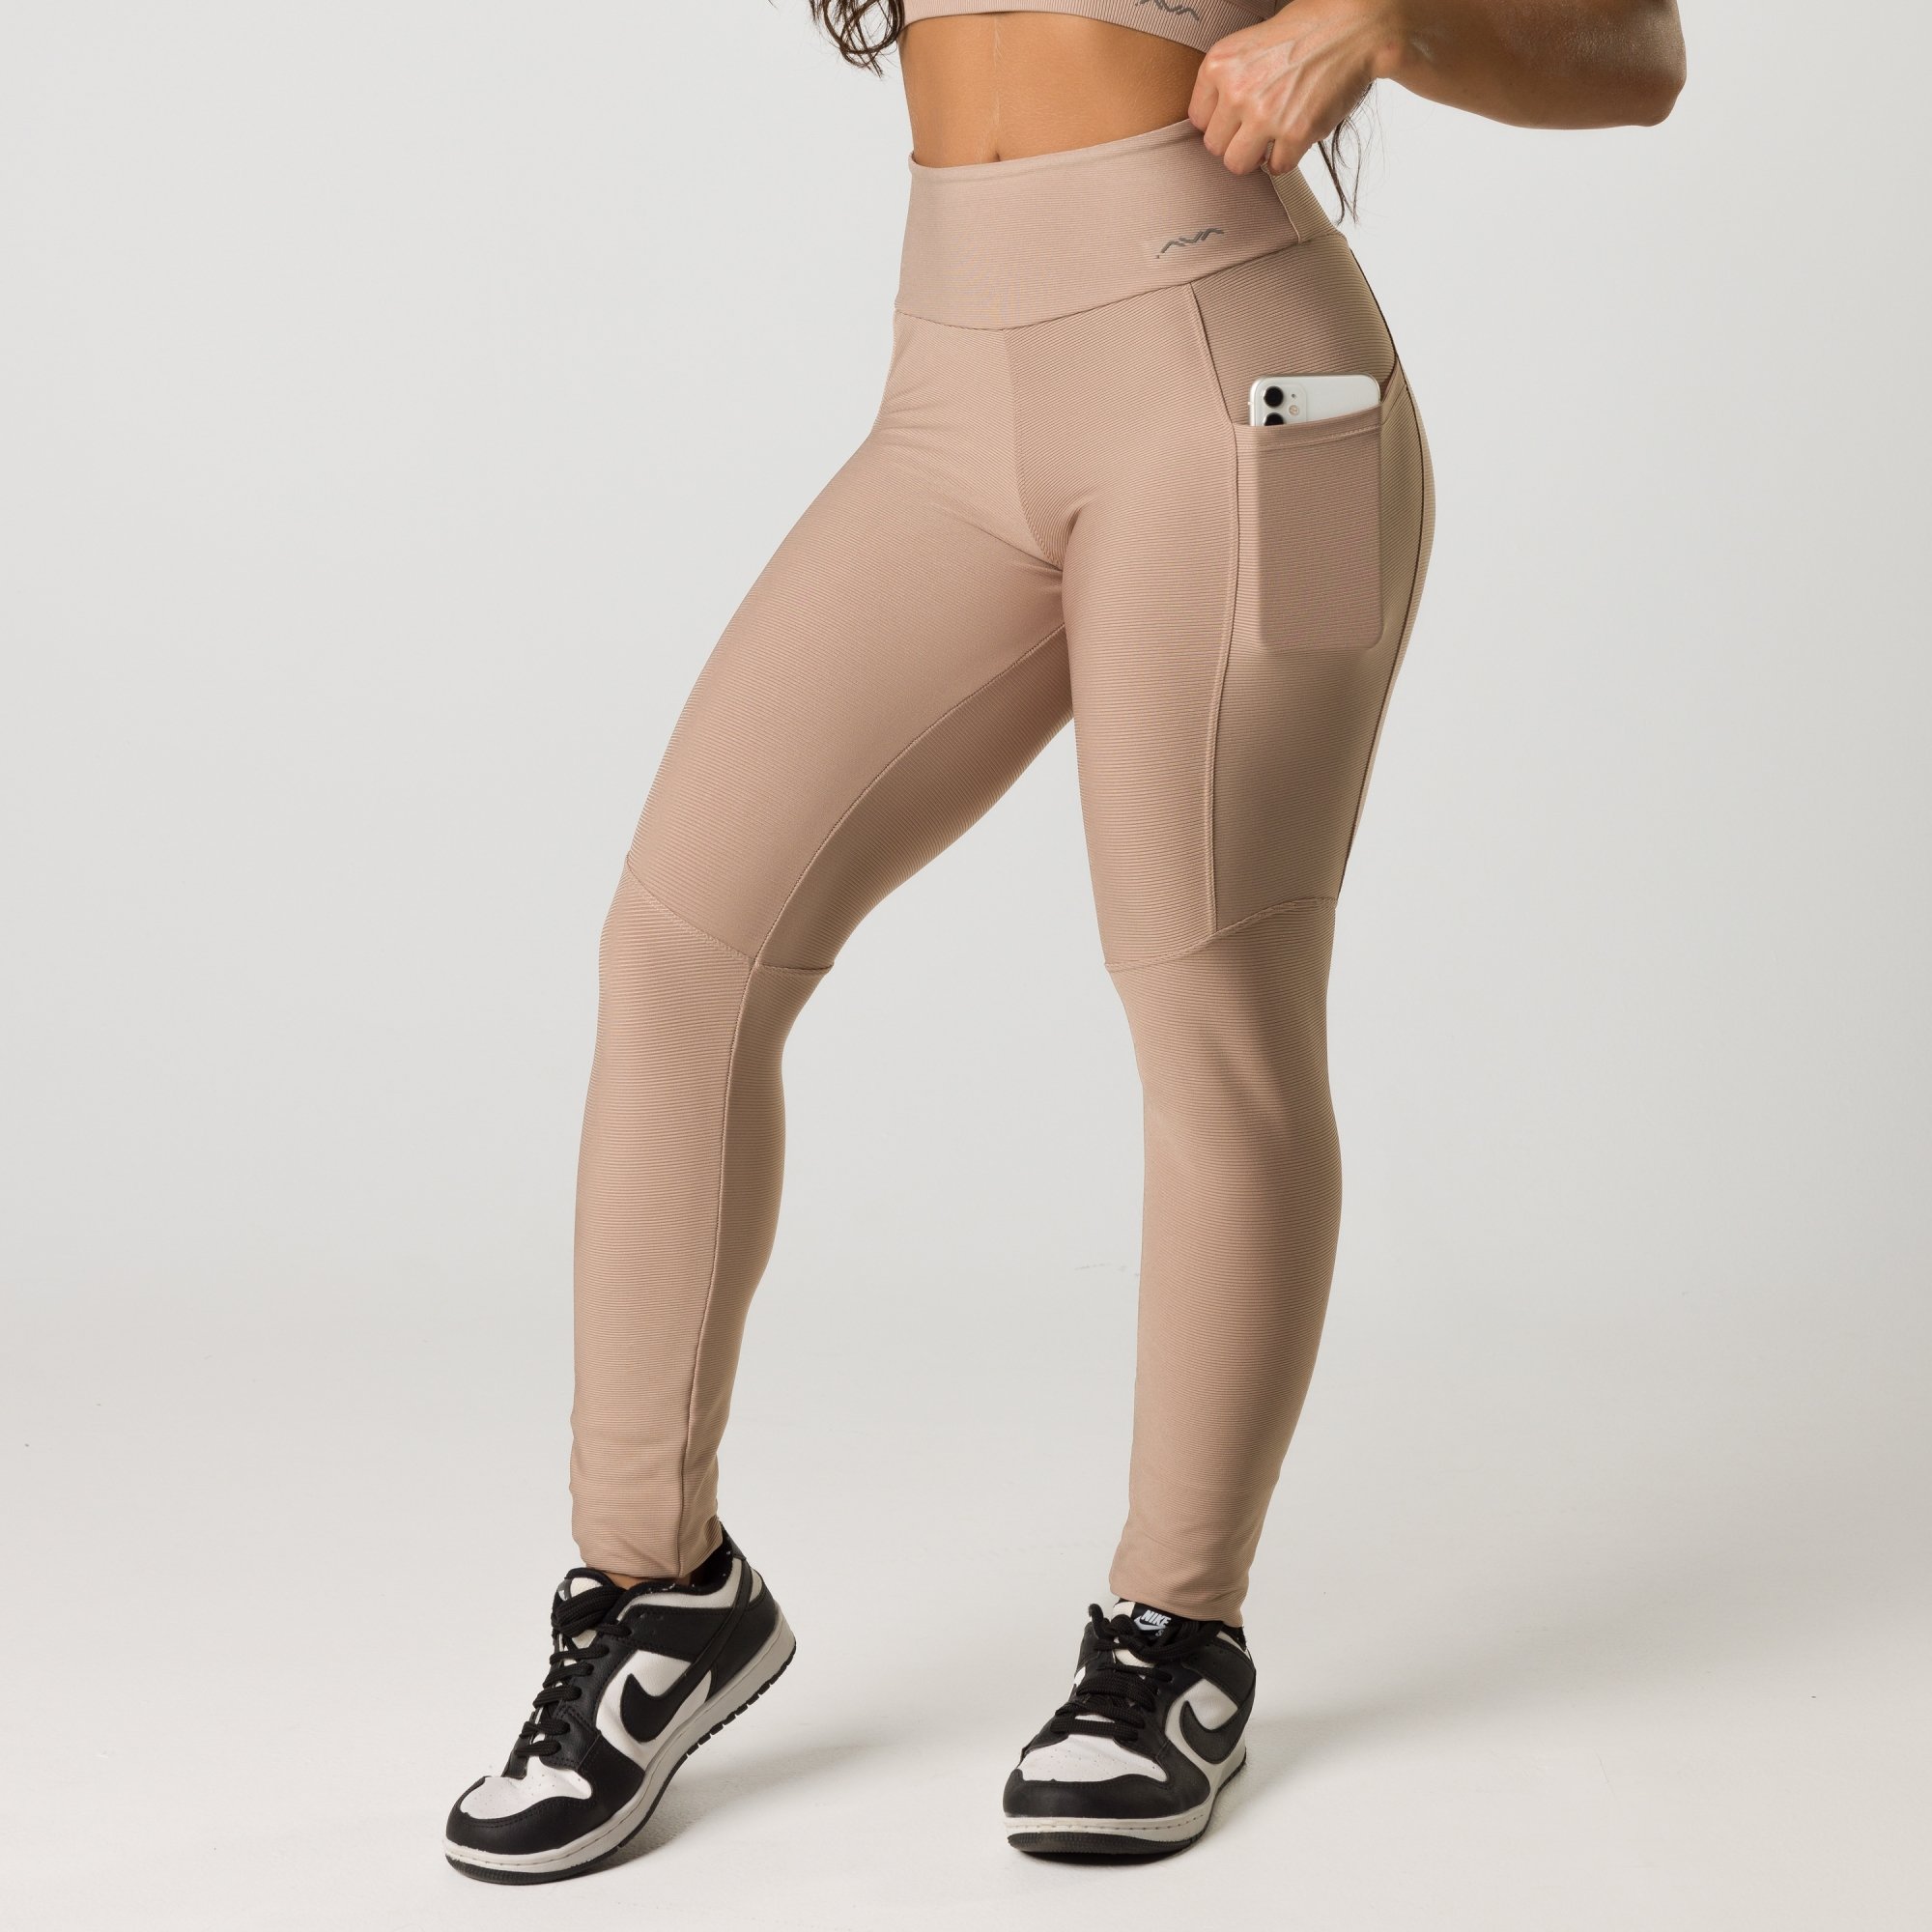 Conjunto Fitness Feminino Calça Legging e Top Transparencia REF: LX128 -  Racy Modas